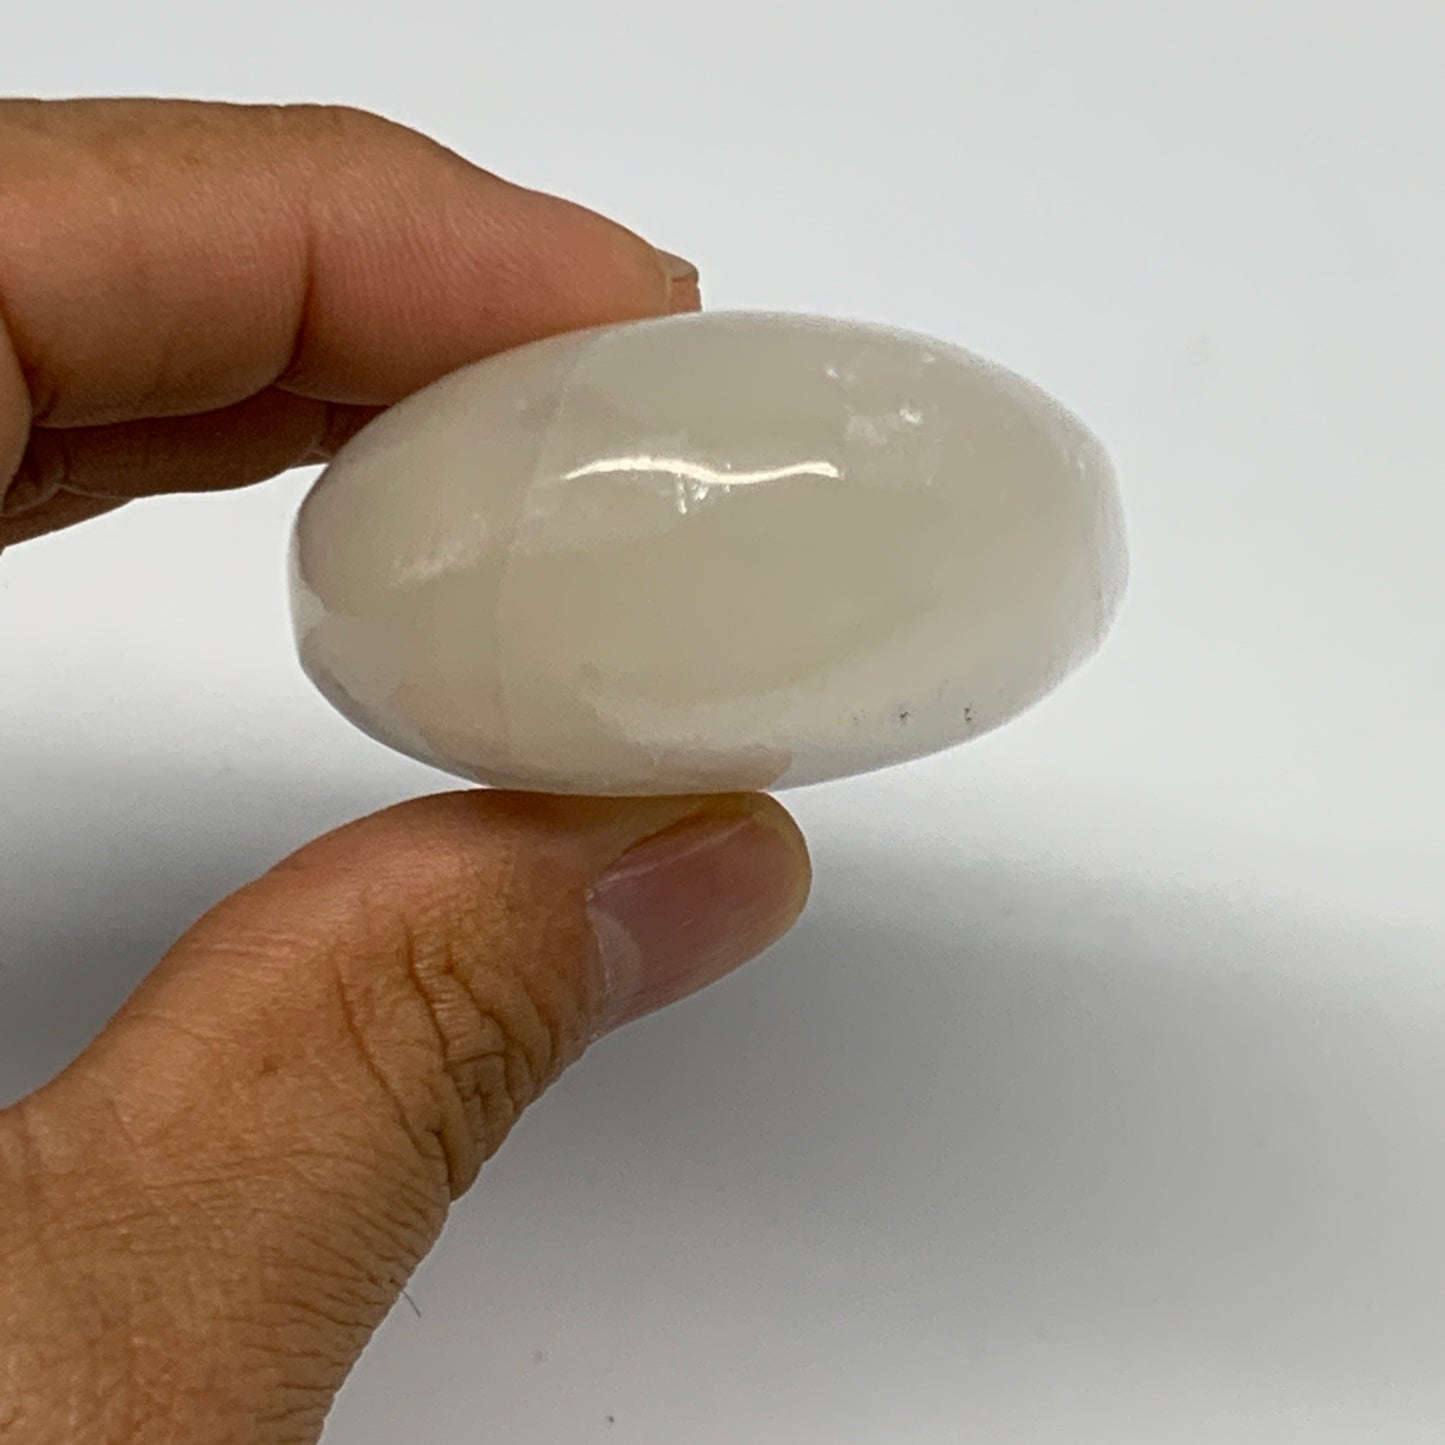 107g, 2.8"x1.8"x1", White Satin Spar (Selenite) Palmstone Crystal Gypsum, B22582